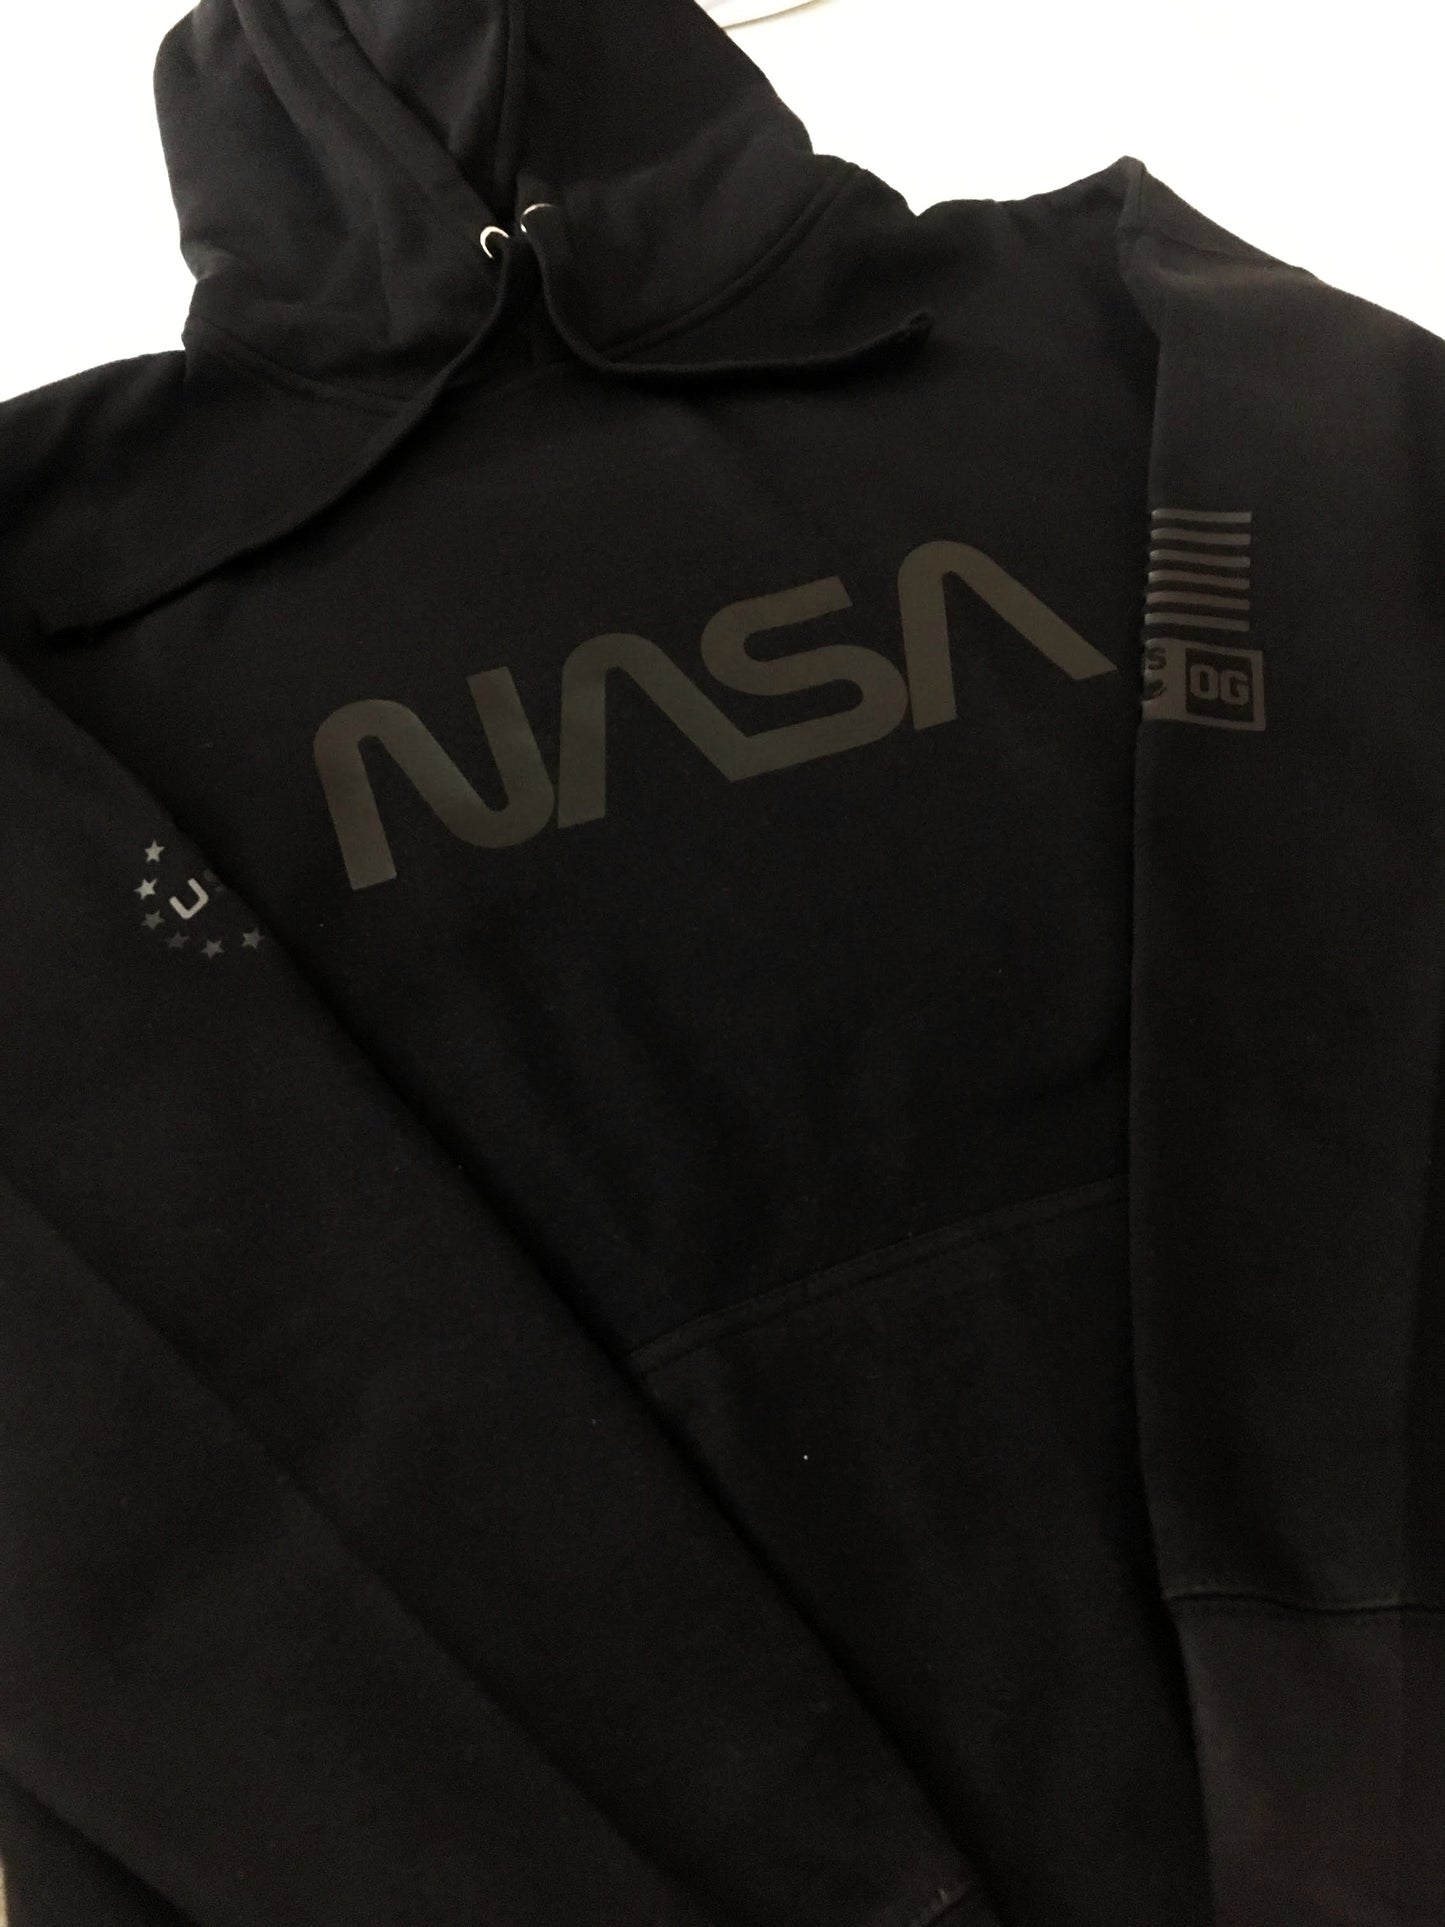 NASA Streetwear Hoodie To Match Air Jordan Retro 4 Black Cat Sneaker Sweatshirt